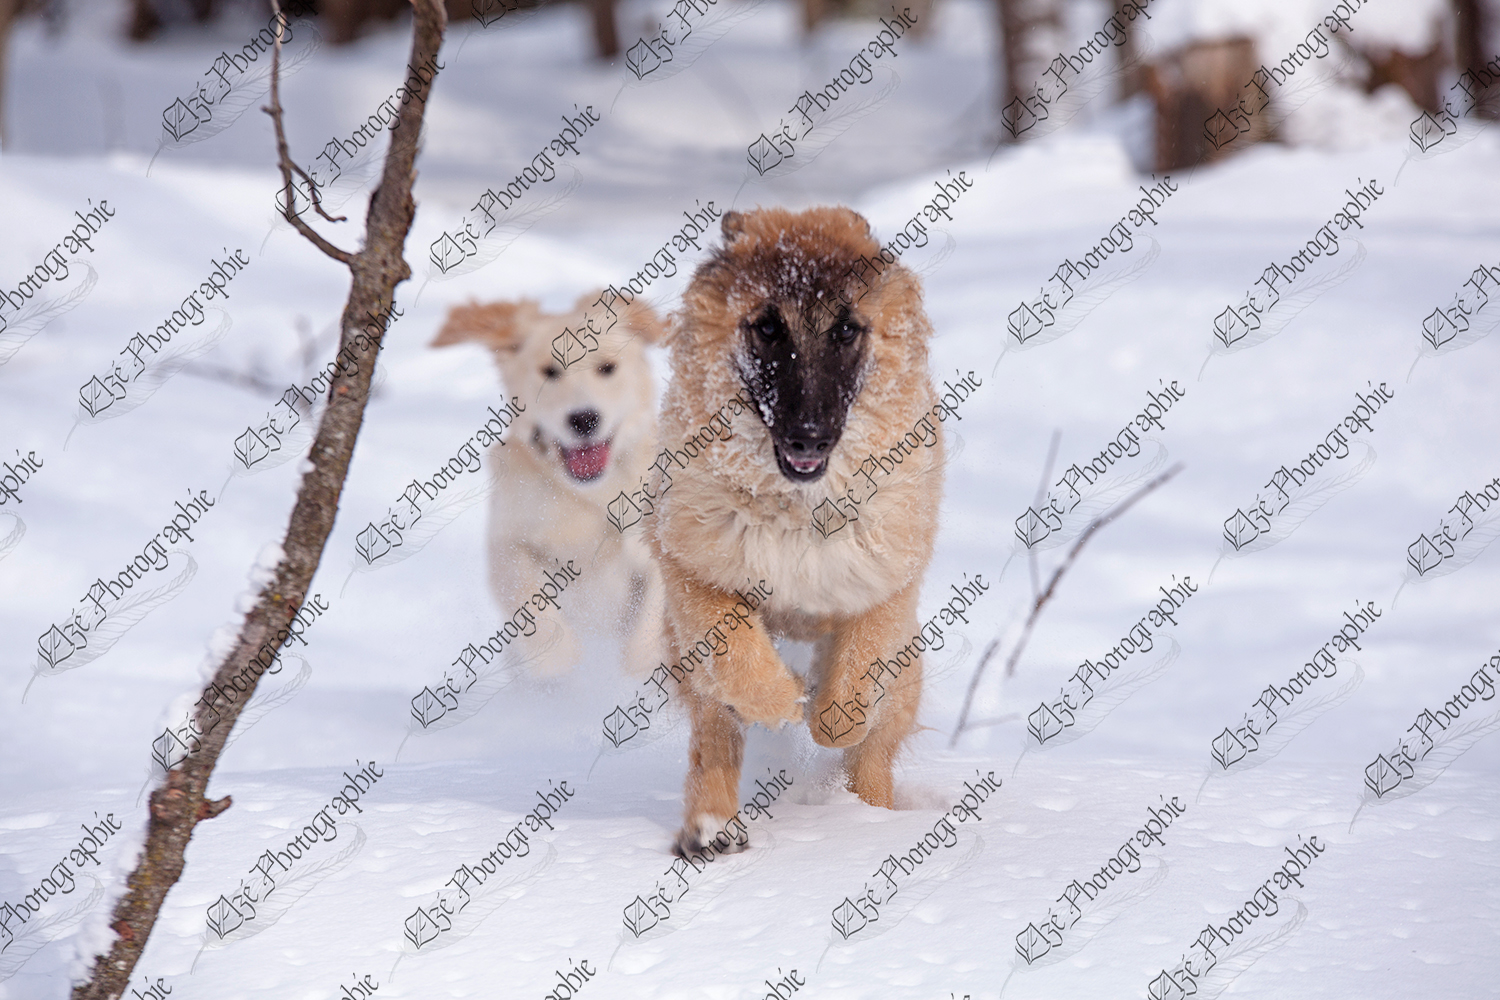 elze_photo_6009_chiens_jeu_course_winter_forest